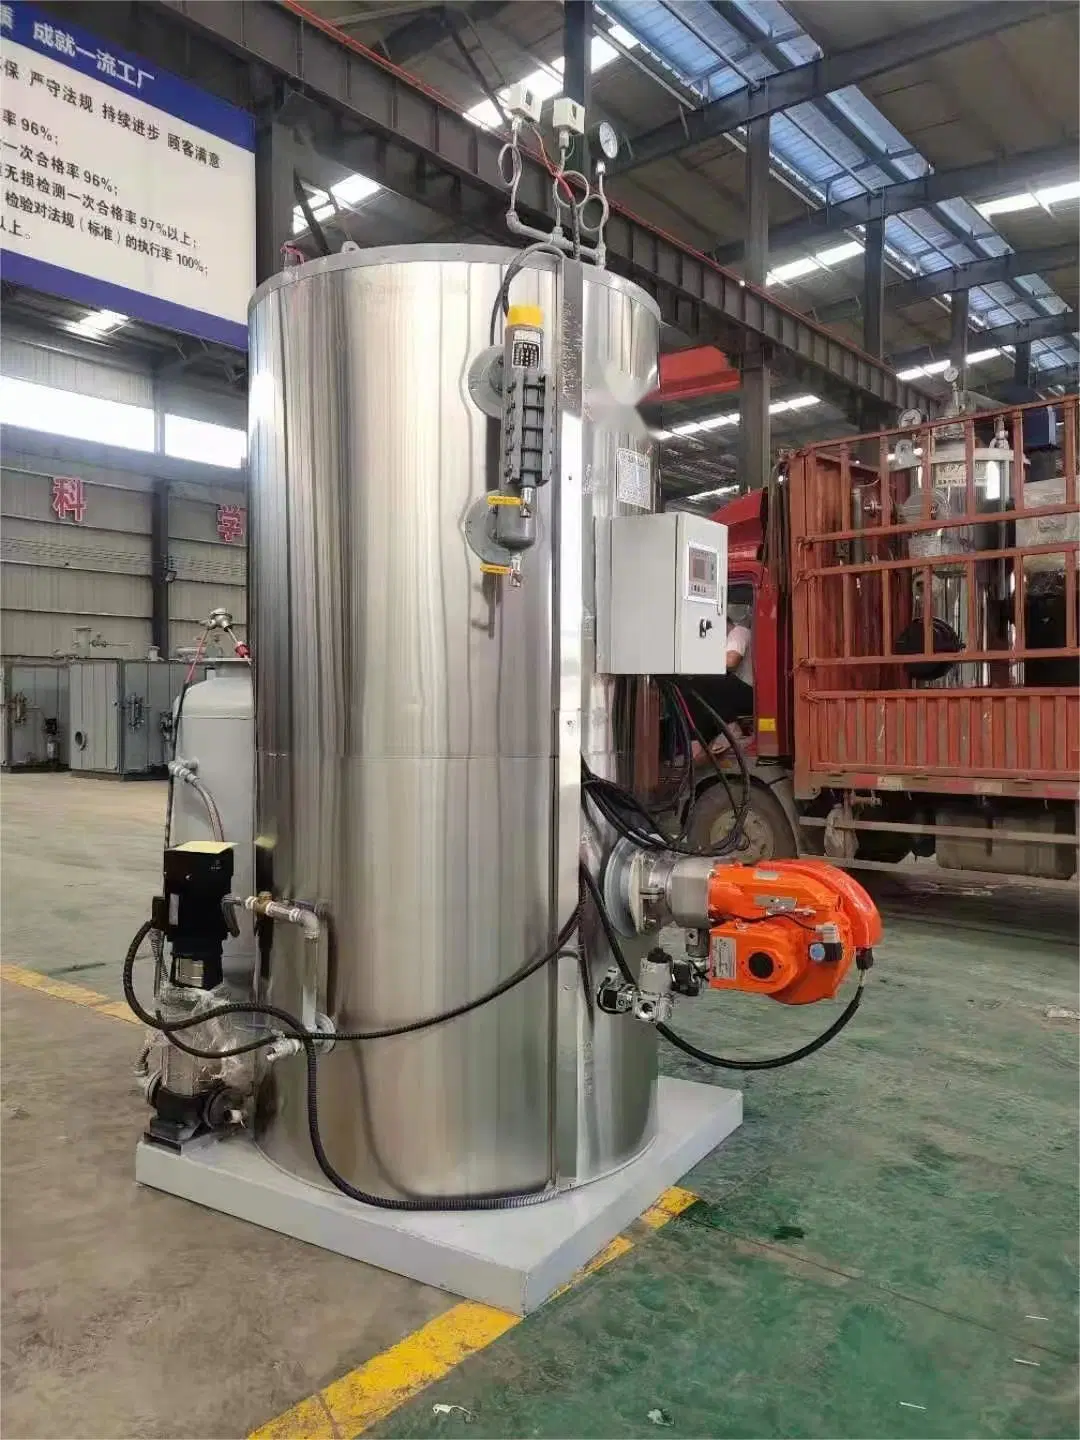 China Günstige Preis Heiß Verkaufen Vertikal Erdgas Diesel Öl Altöl befeuerte Wasser Rohr Dampf Generator Kessel mit CE Zertifikat